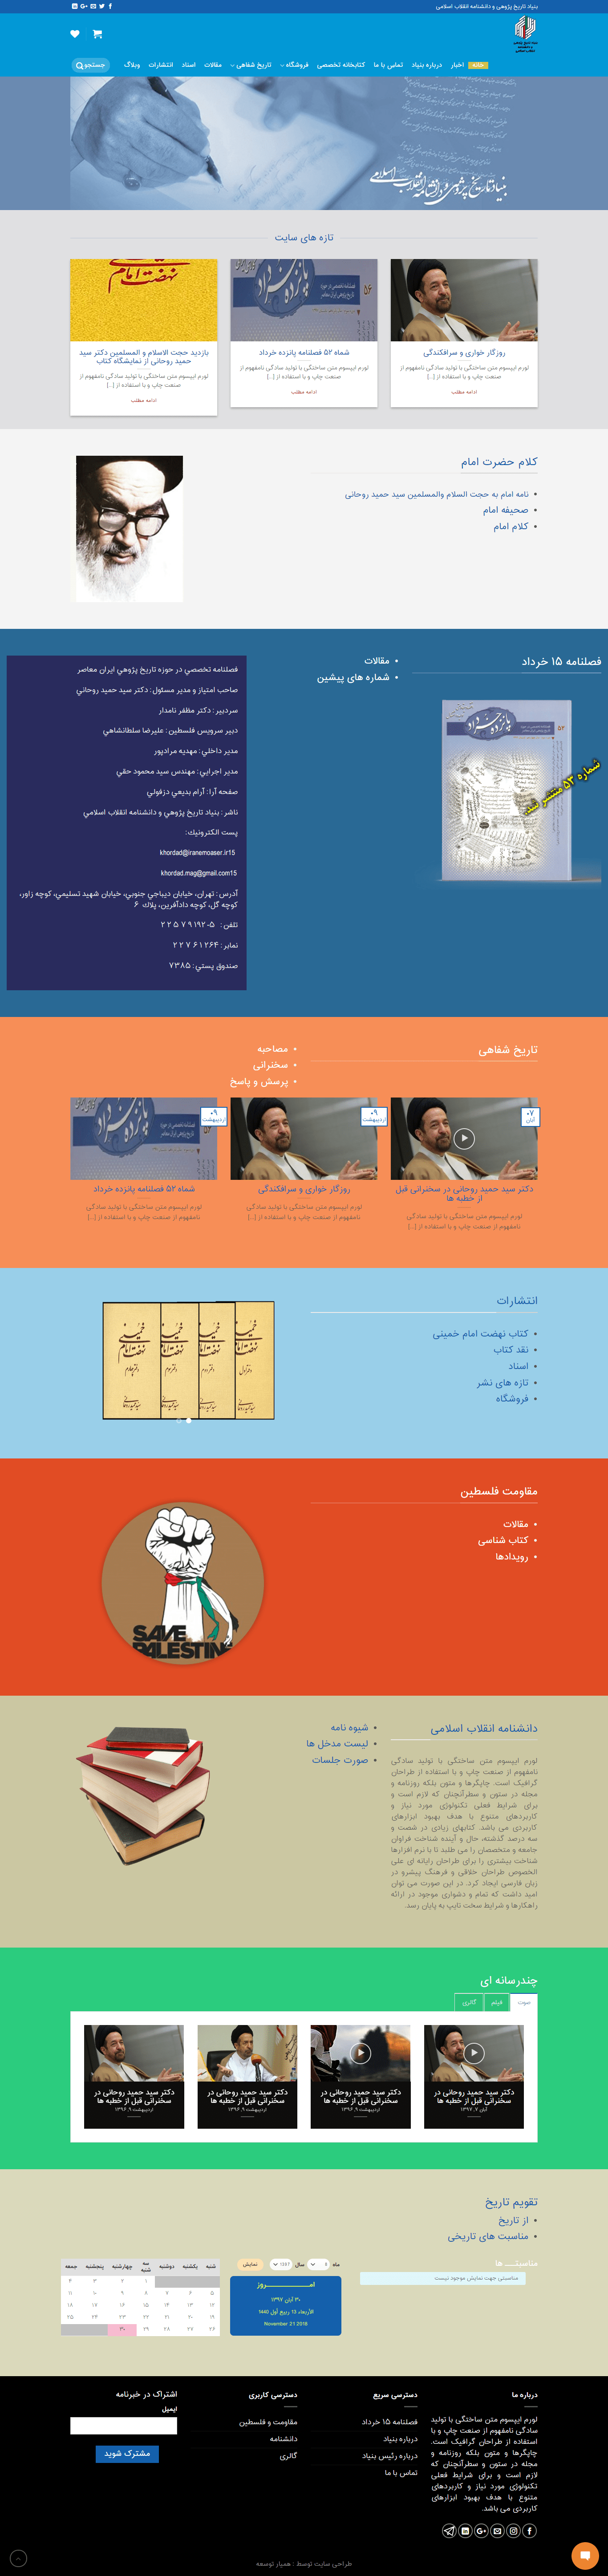 طراحی سایت بنیاد تاریخ پژوهی و دانشنامه انقلاب اسلامی